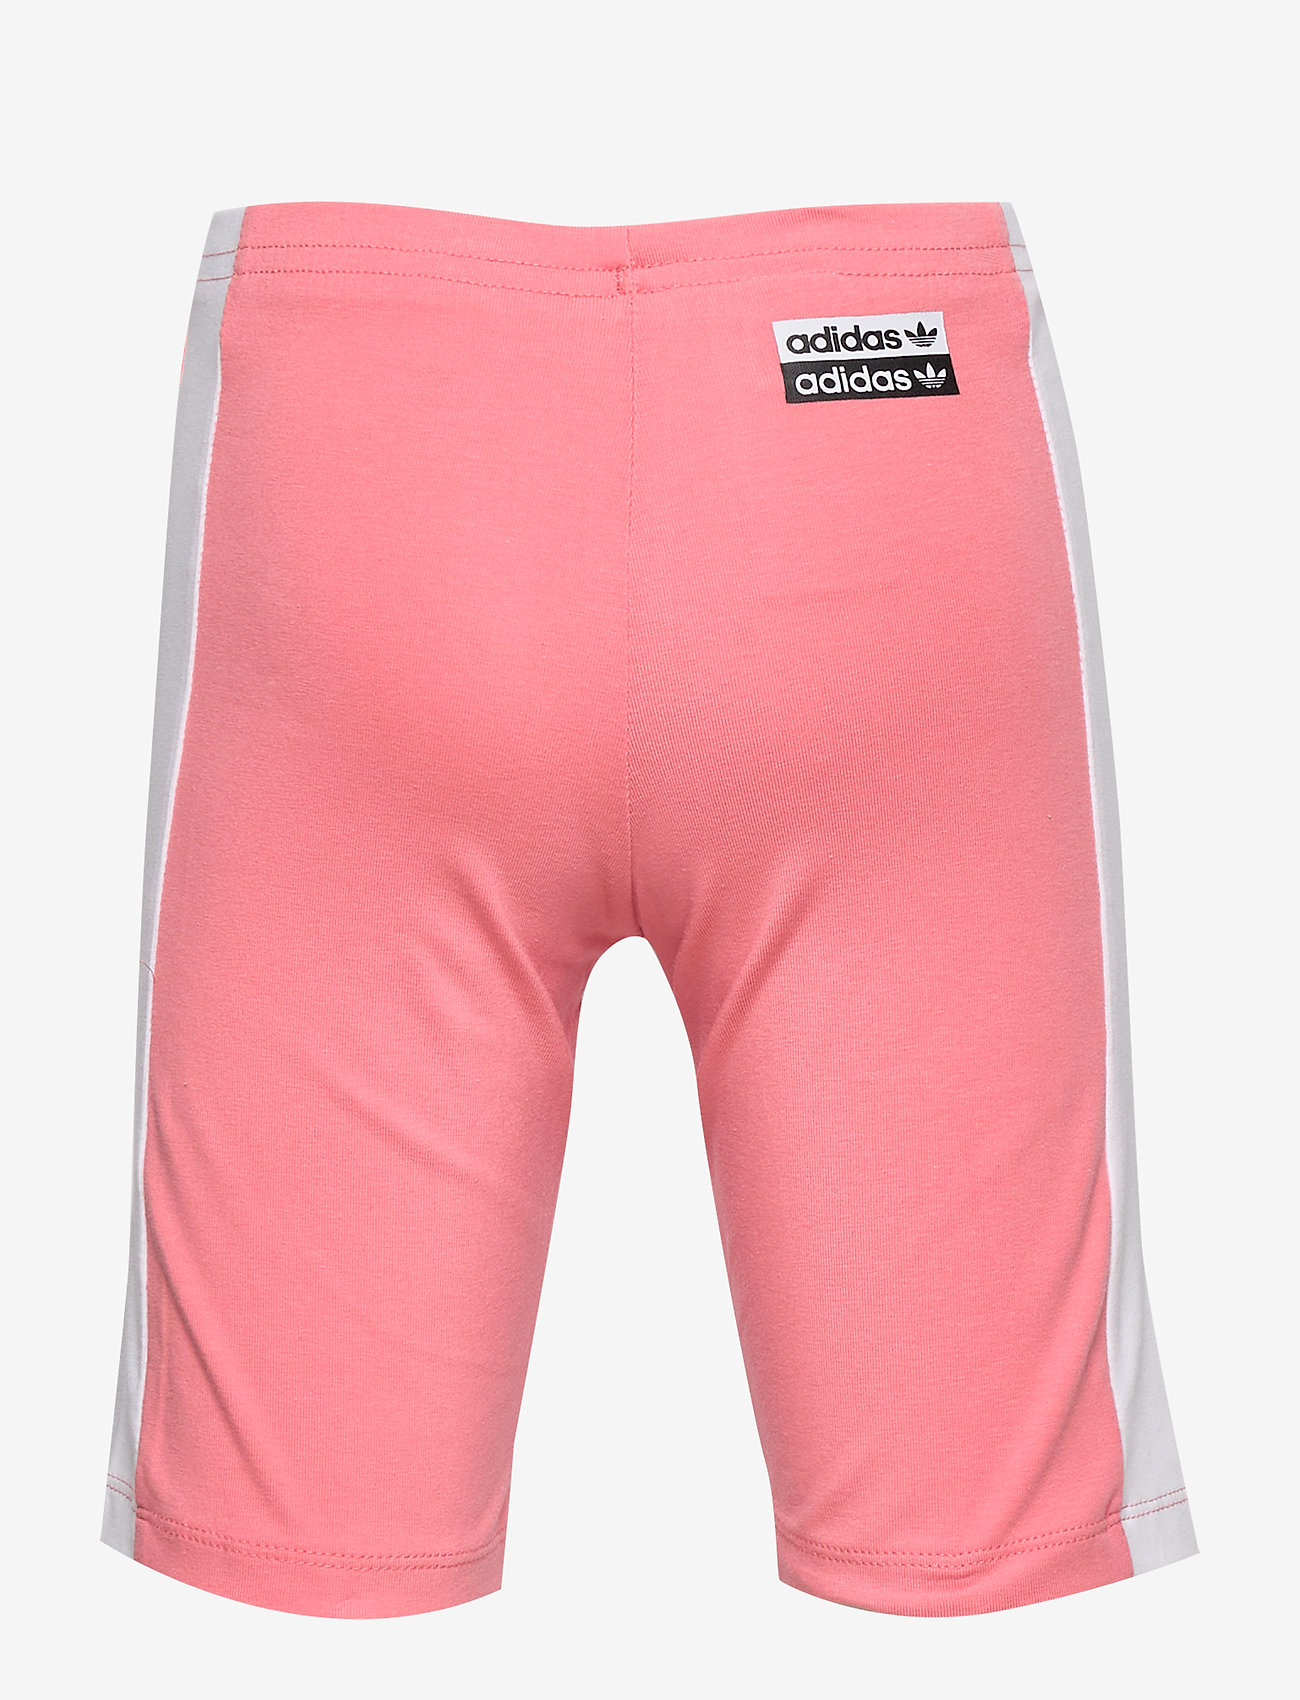 adidas pink cycling shorts